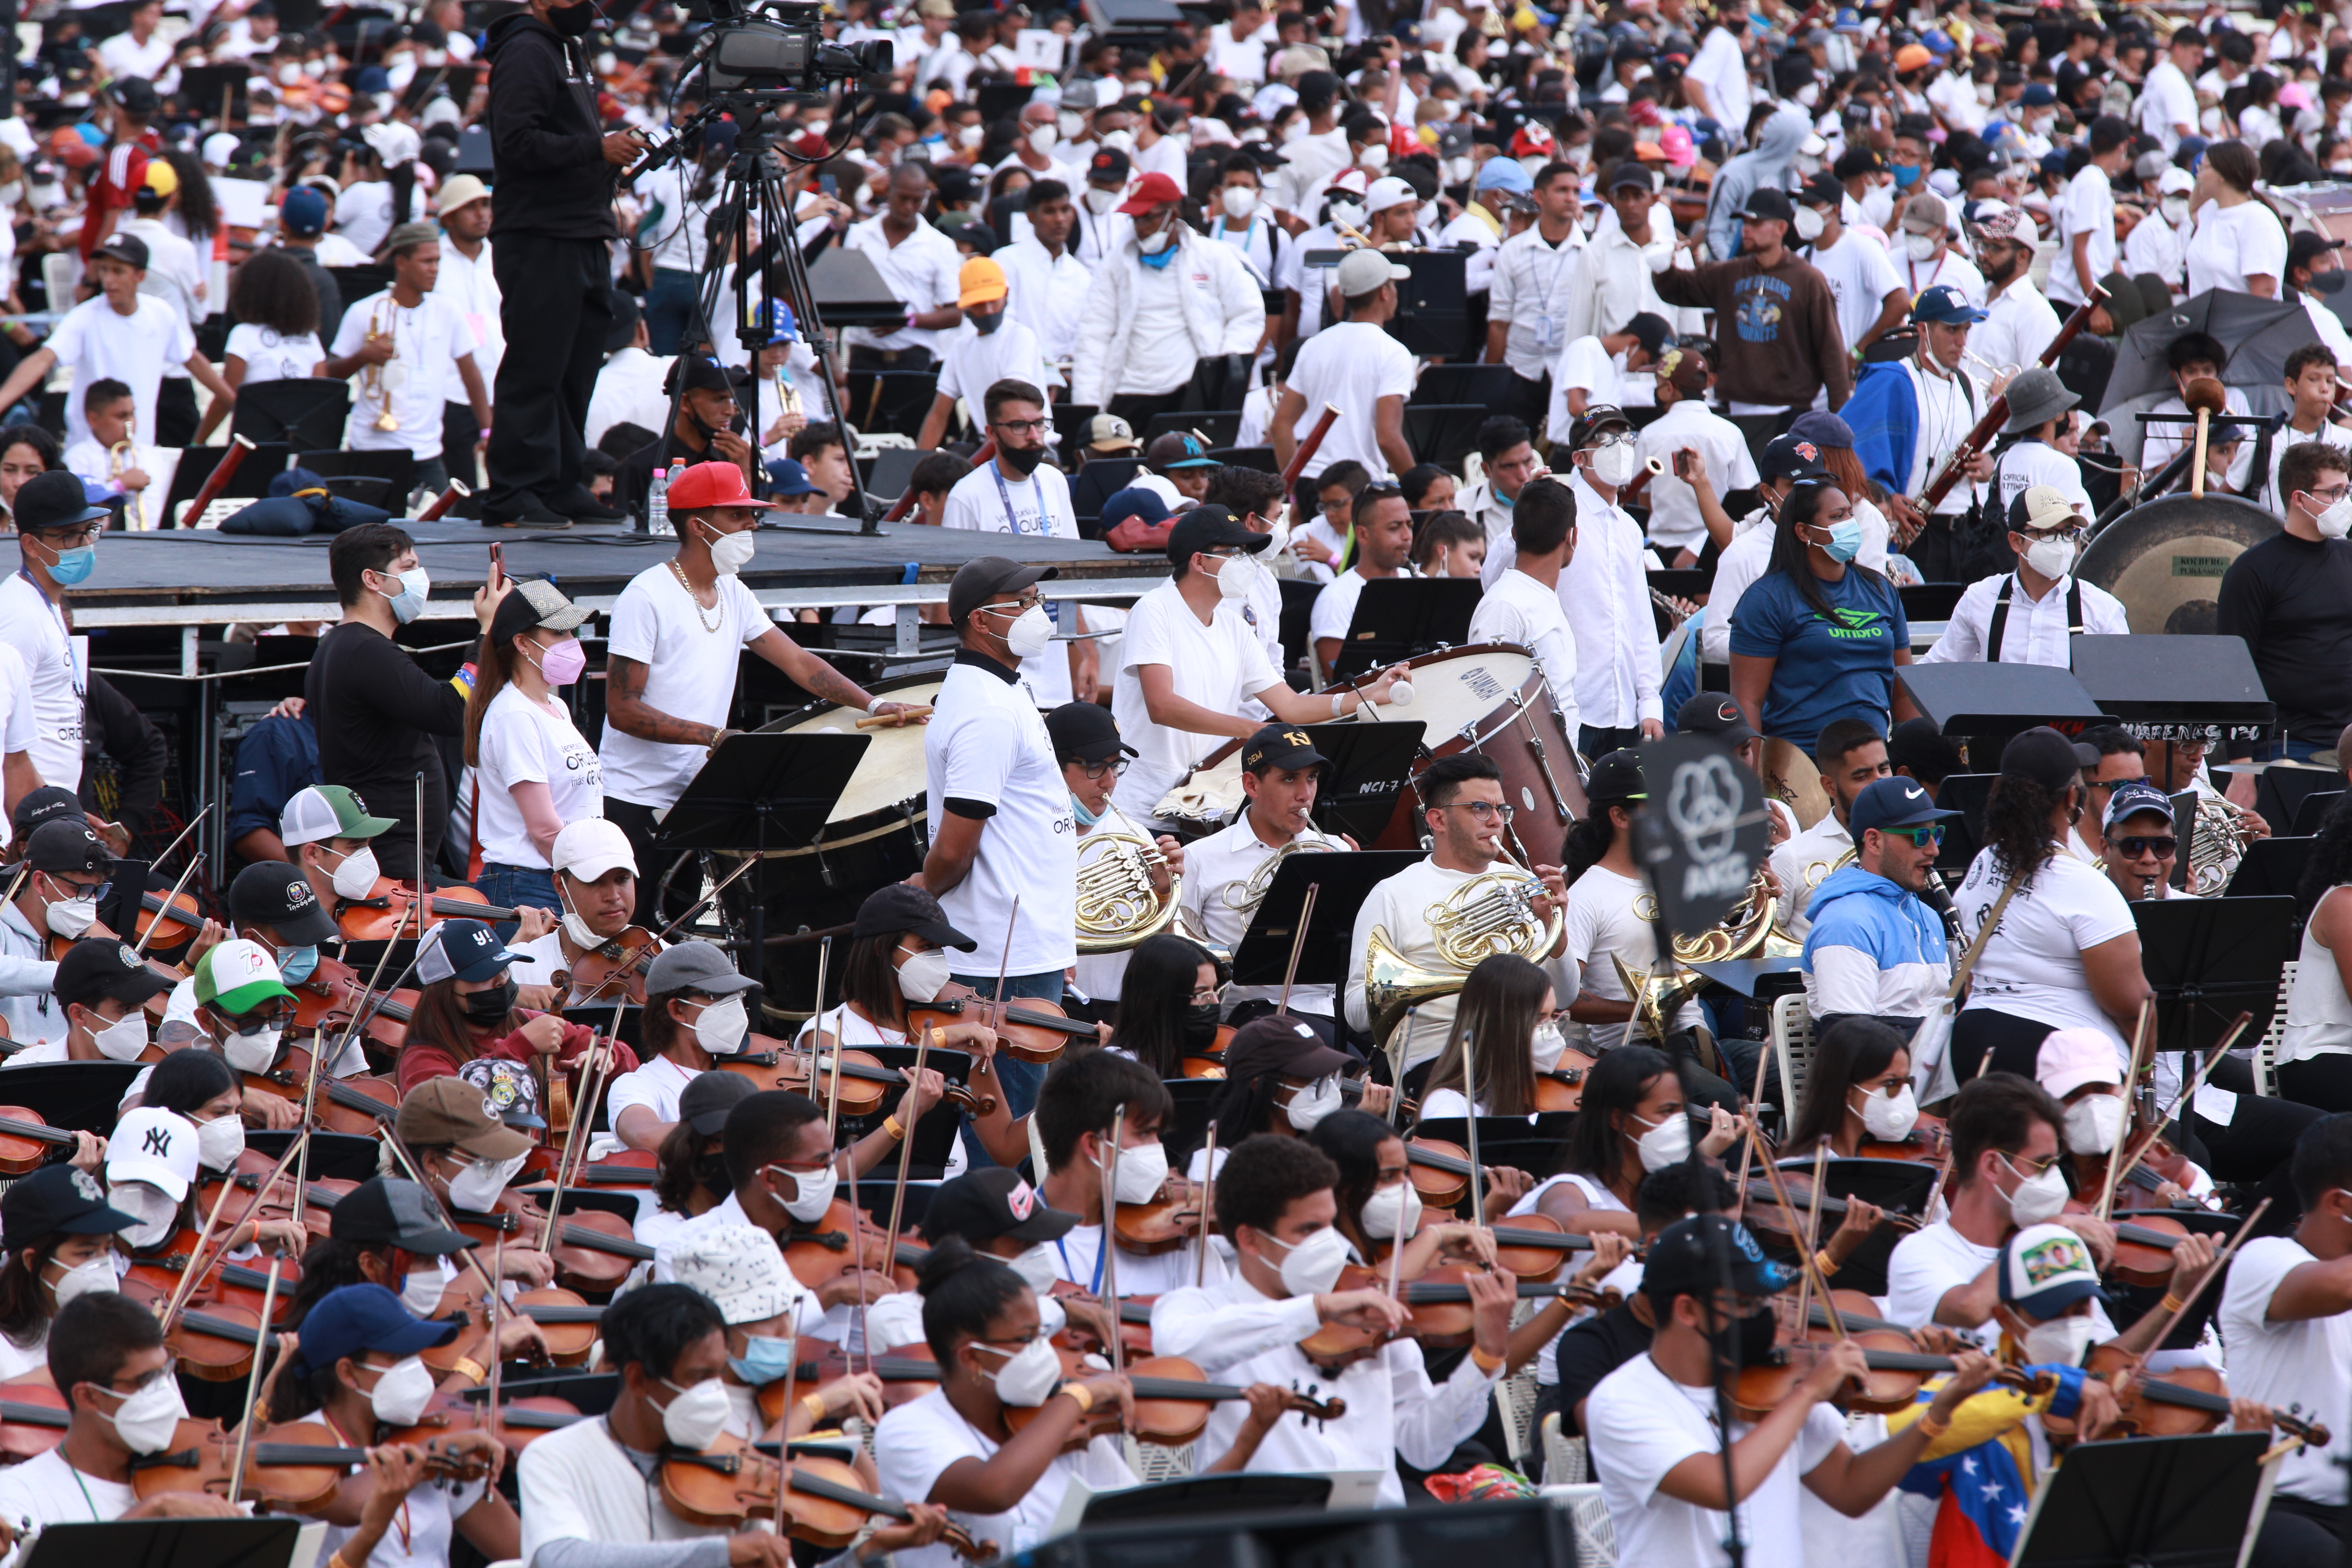 Siga EN VIVO la ceremonia del anuncio del Récord Guinness a la Orquesta Más Grande del Mundo